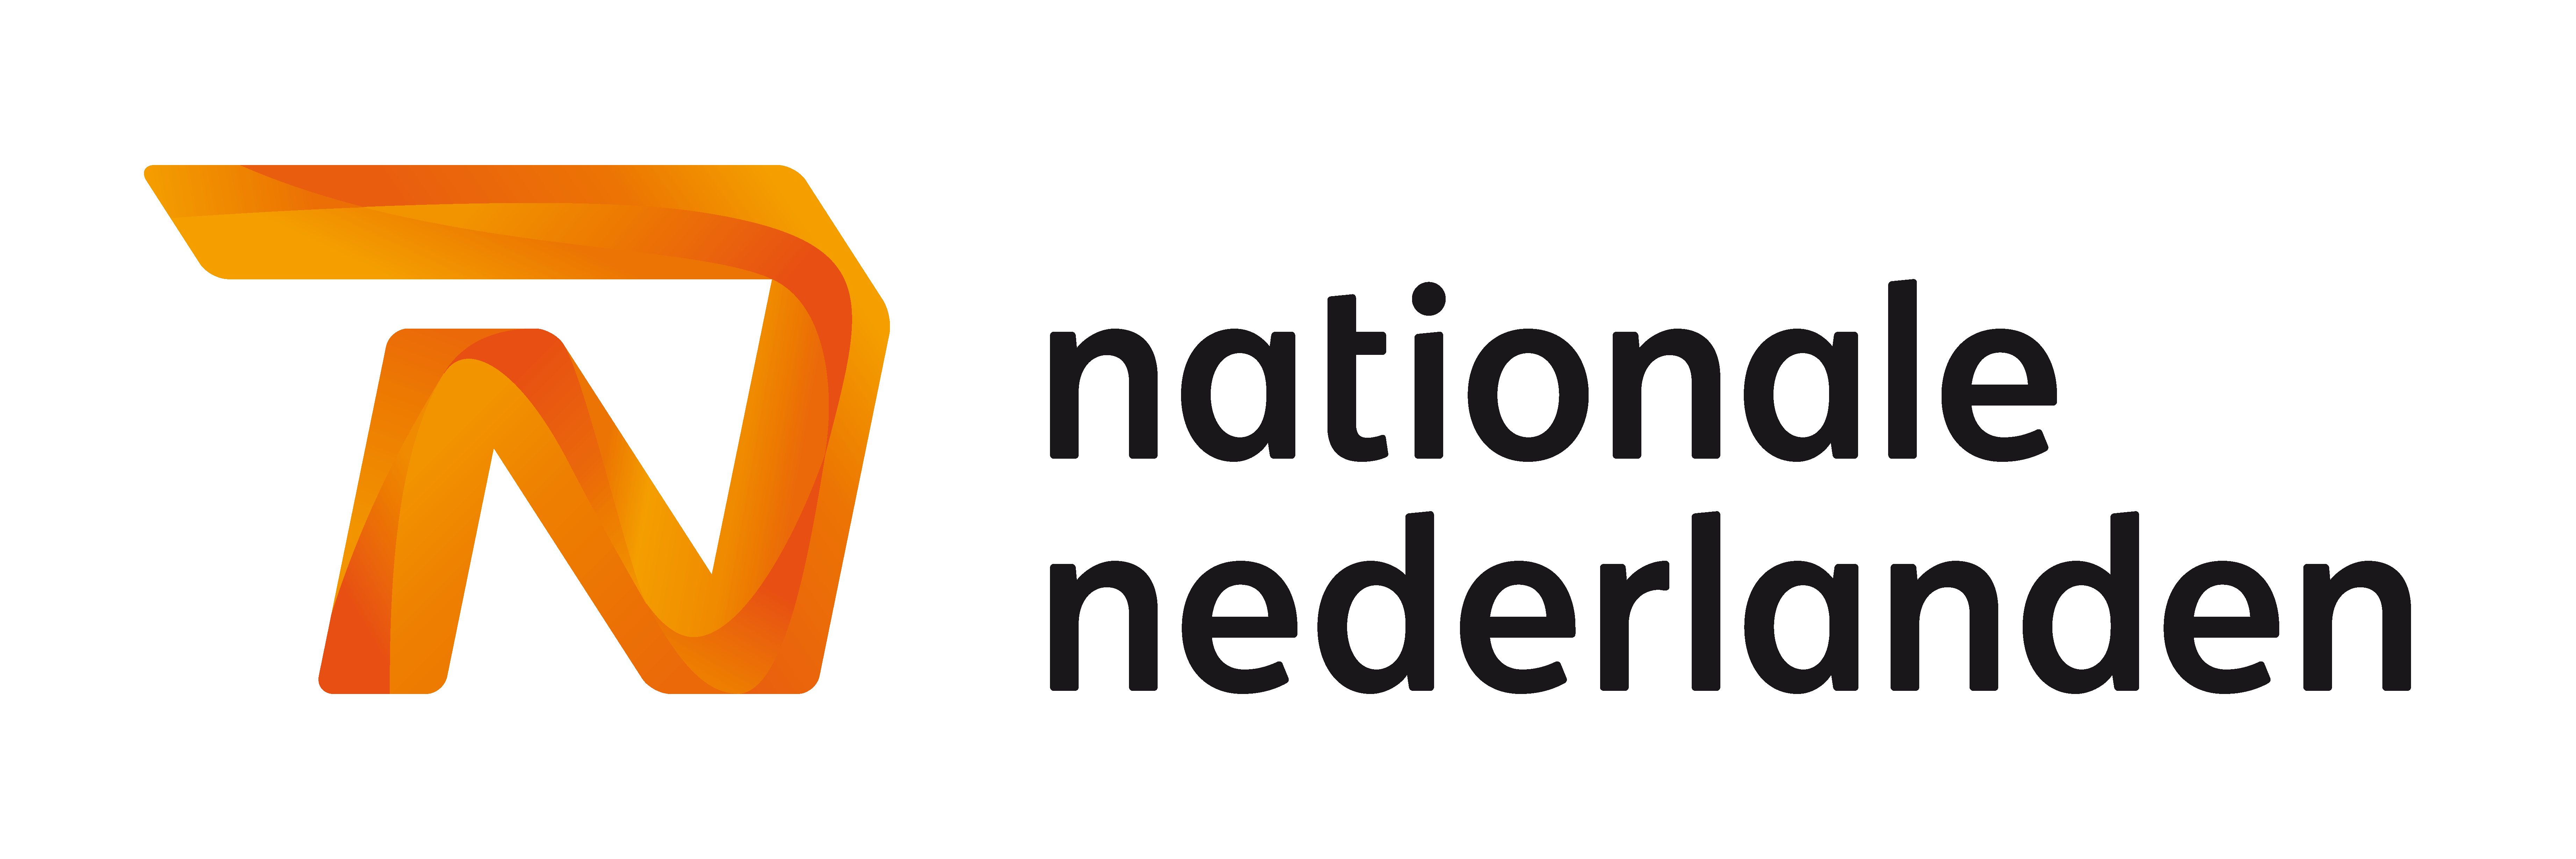 Nationale nederlanden - logo